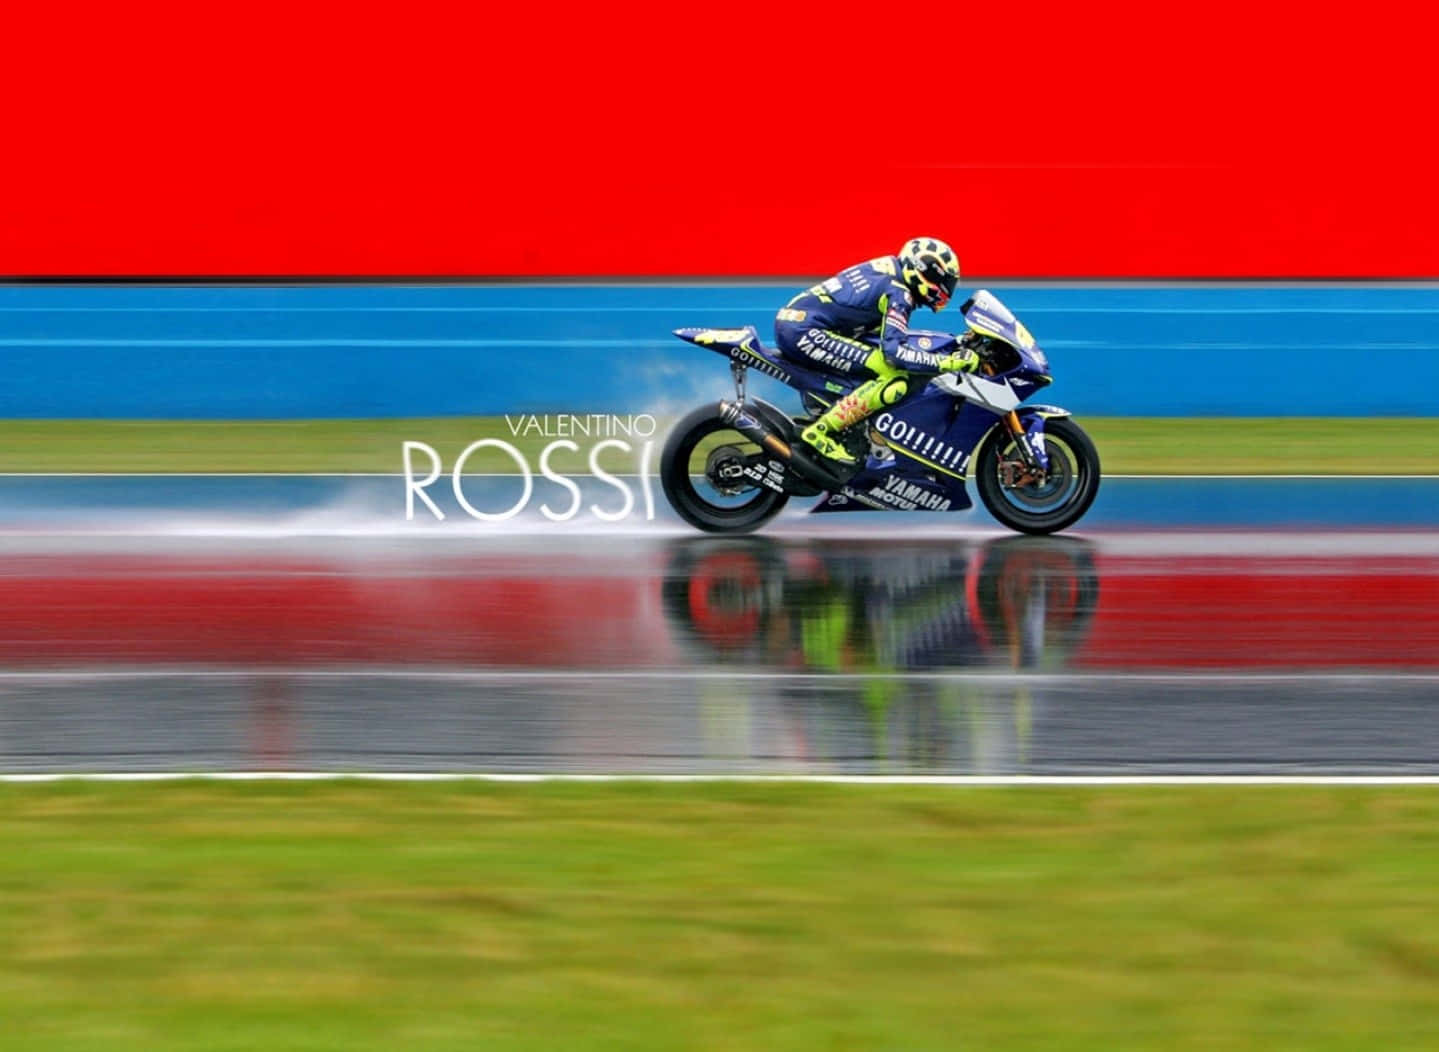 Vr46 Racing Poster Rossi Wallpaper